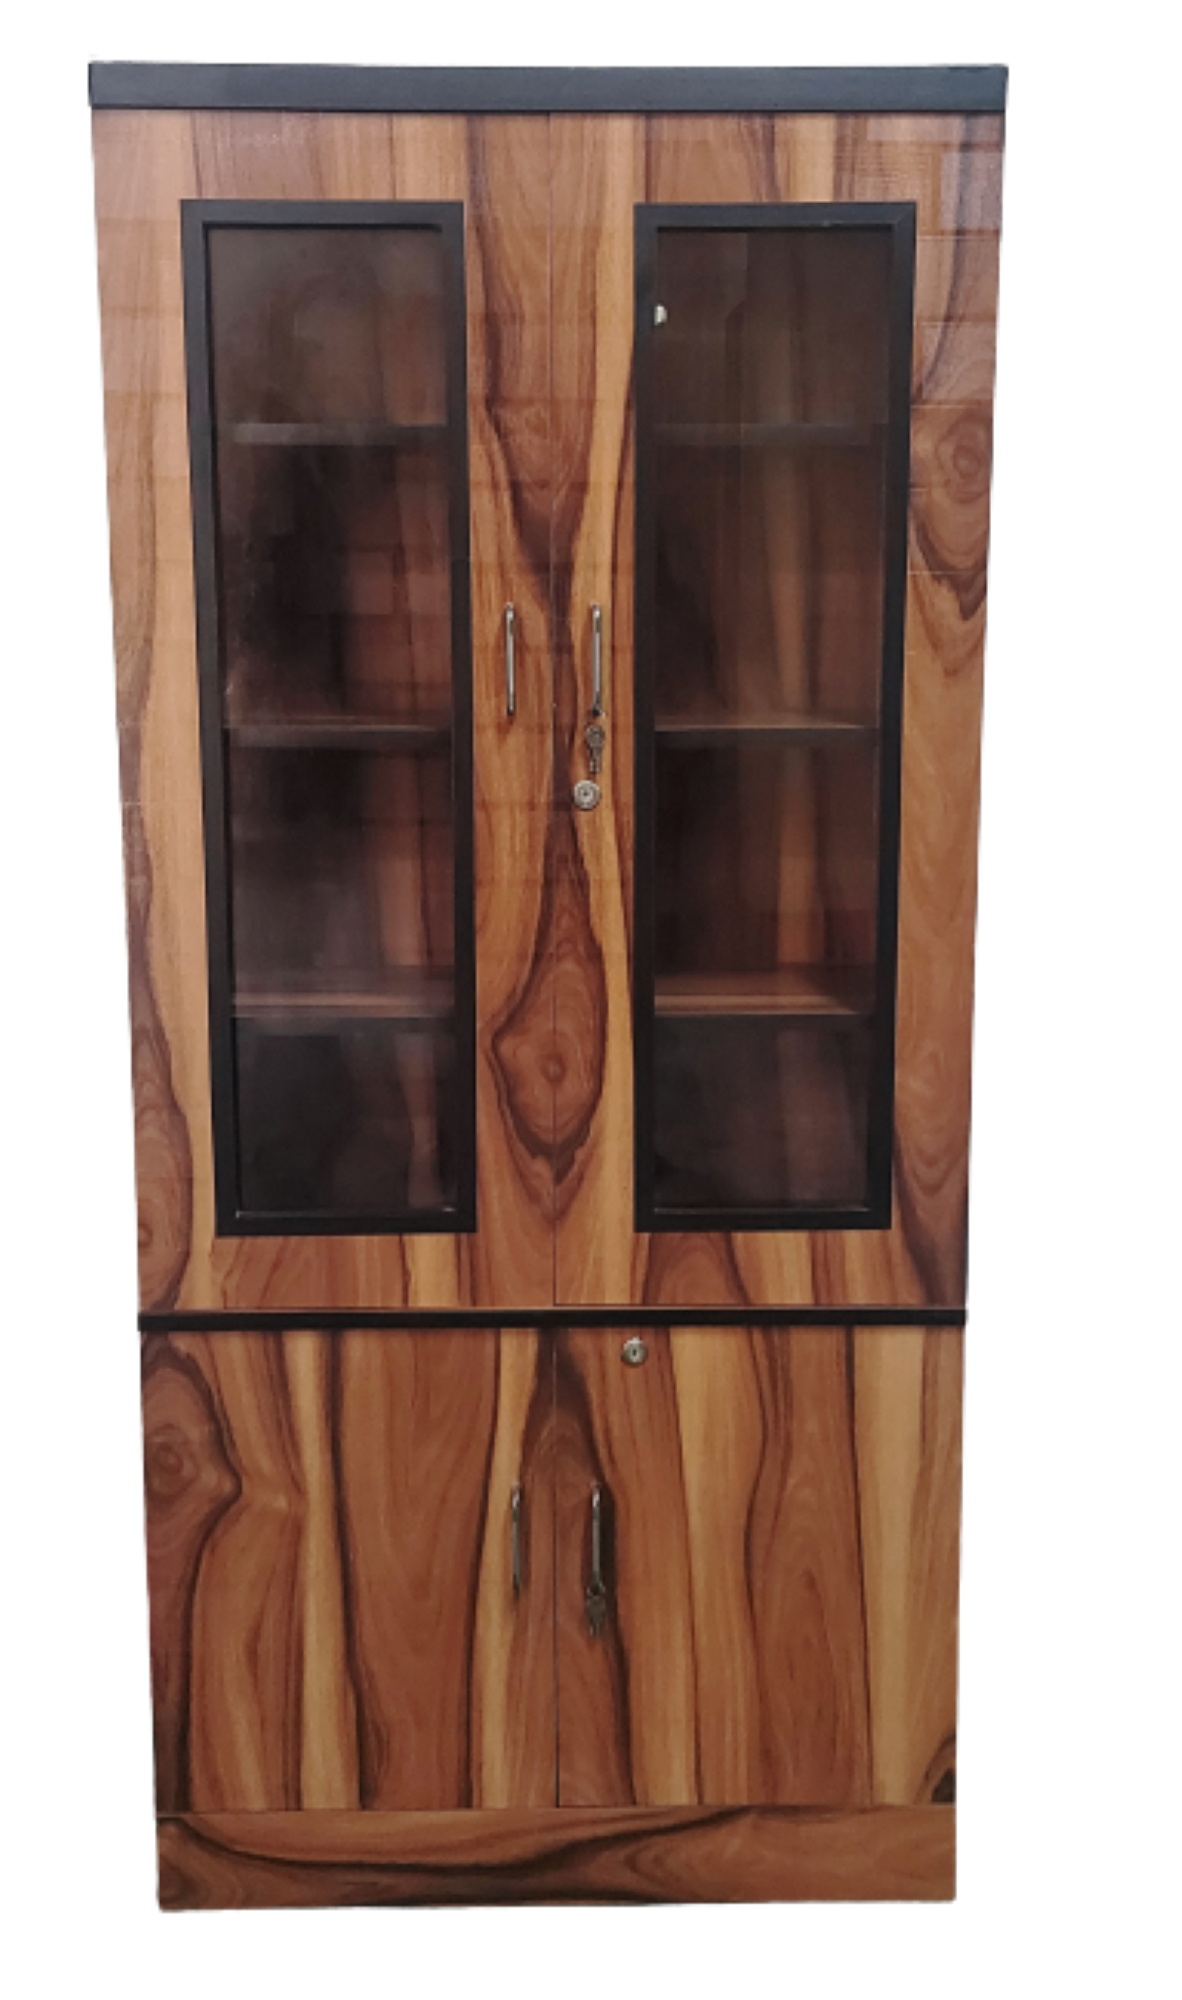 Bowzar Wooden Bookshelf 5 Feet Height Brown Yellow